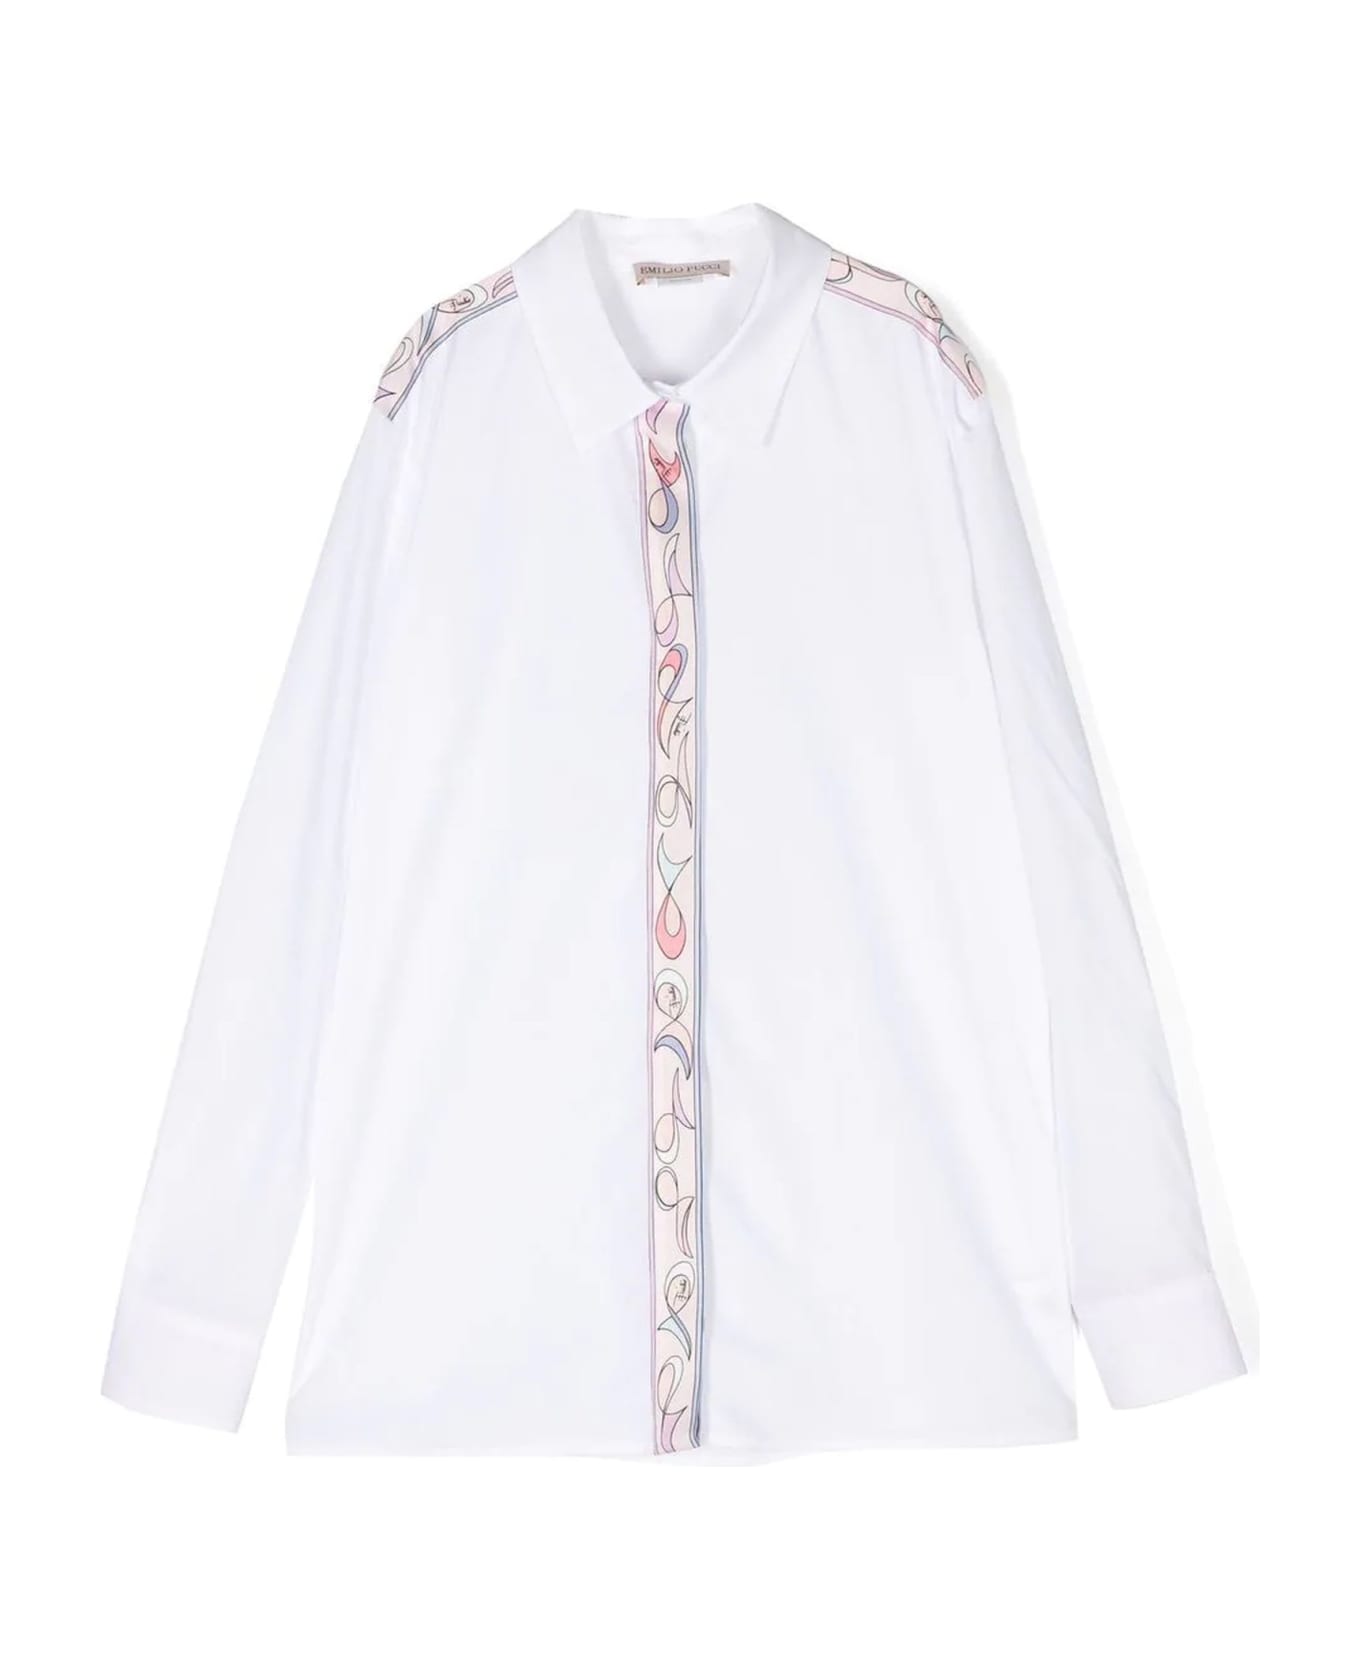 Pucci Emilio Pucci Shirts White - White